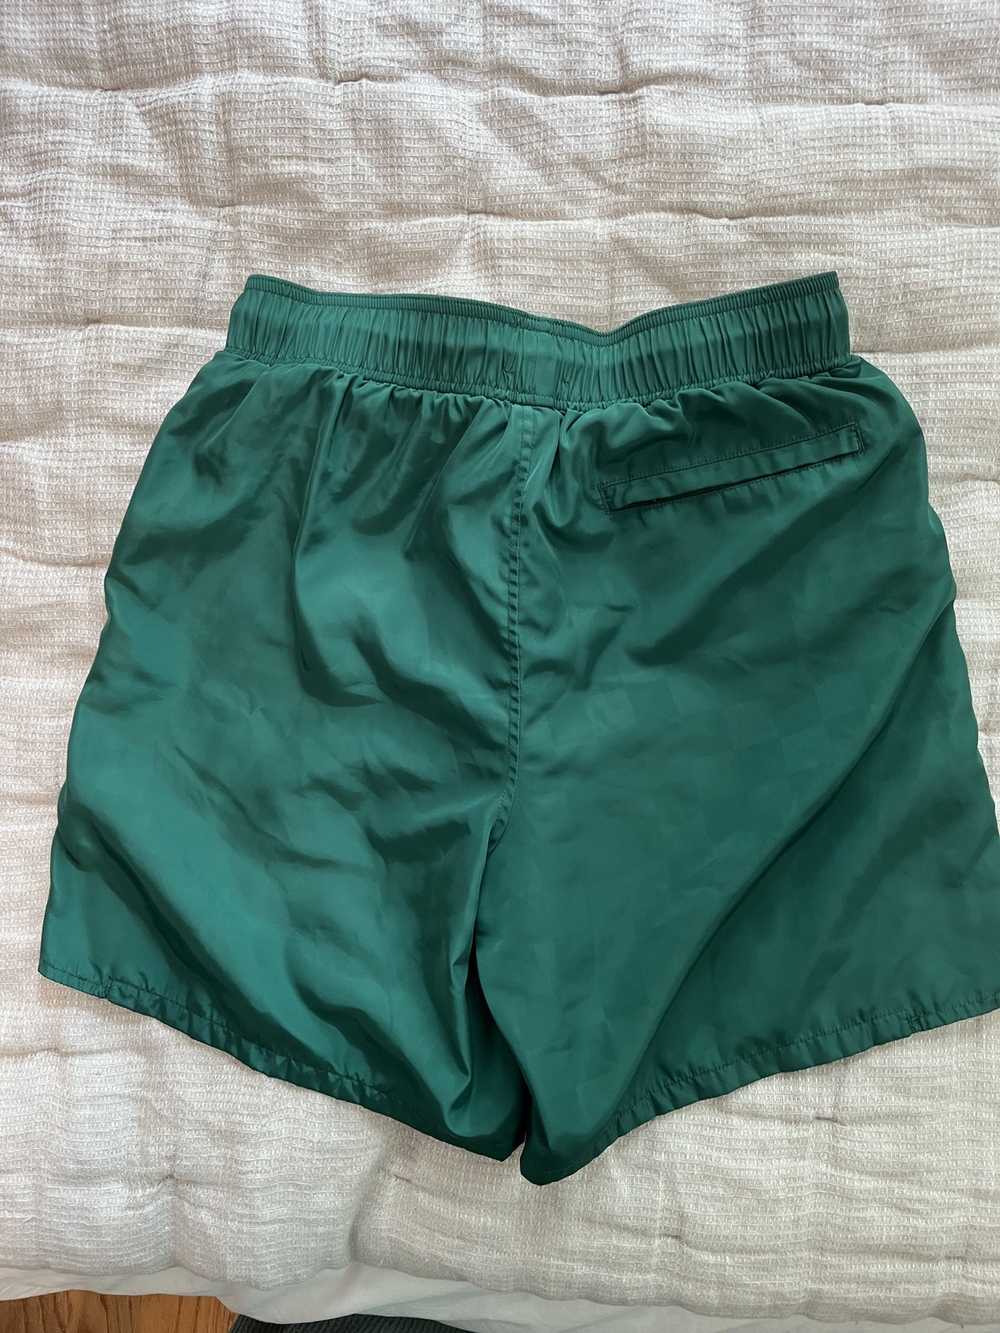 Aime Leon Dore ALD Green Swim Shorts (S) - image 5